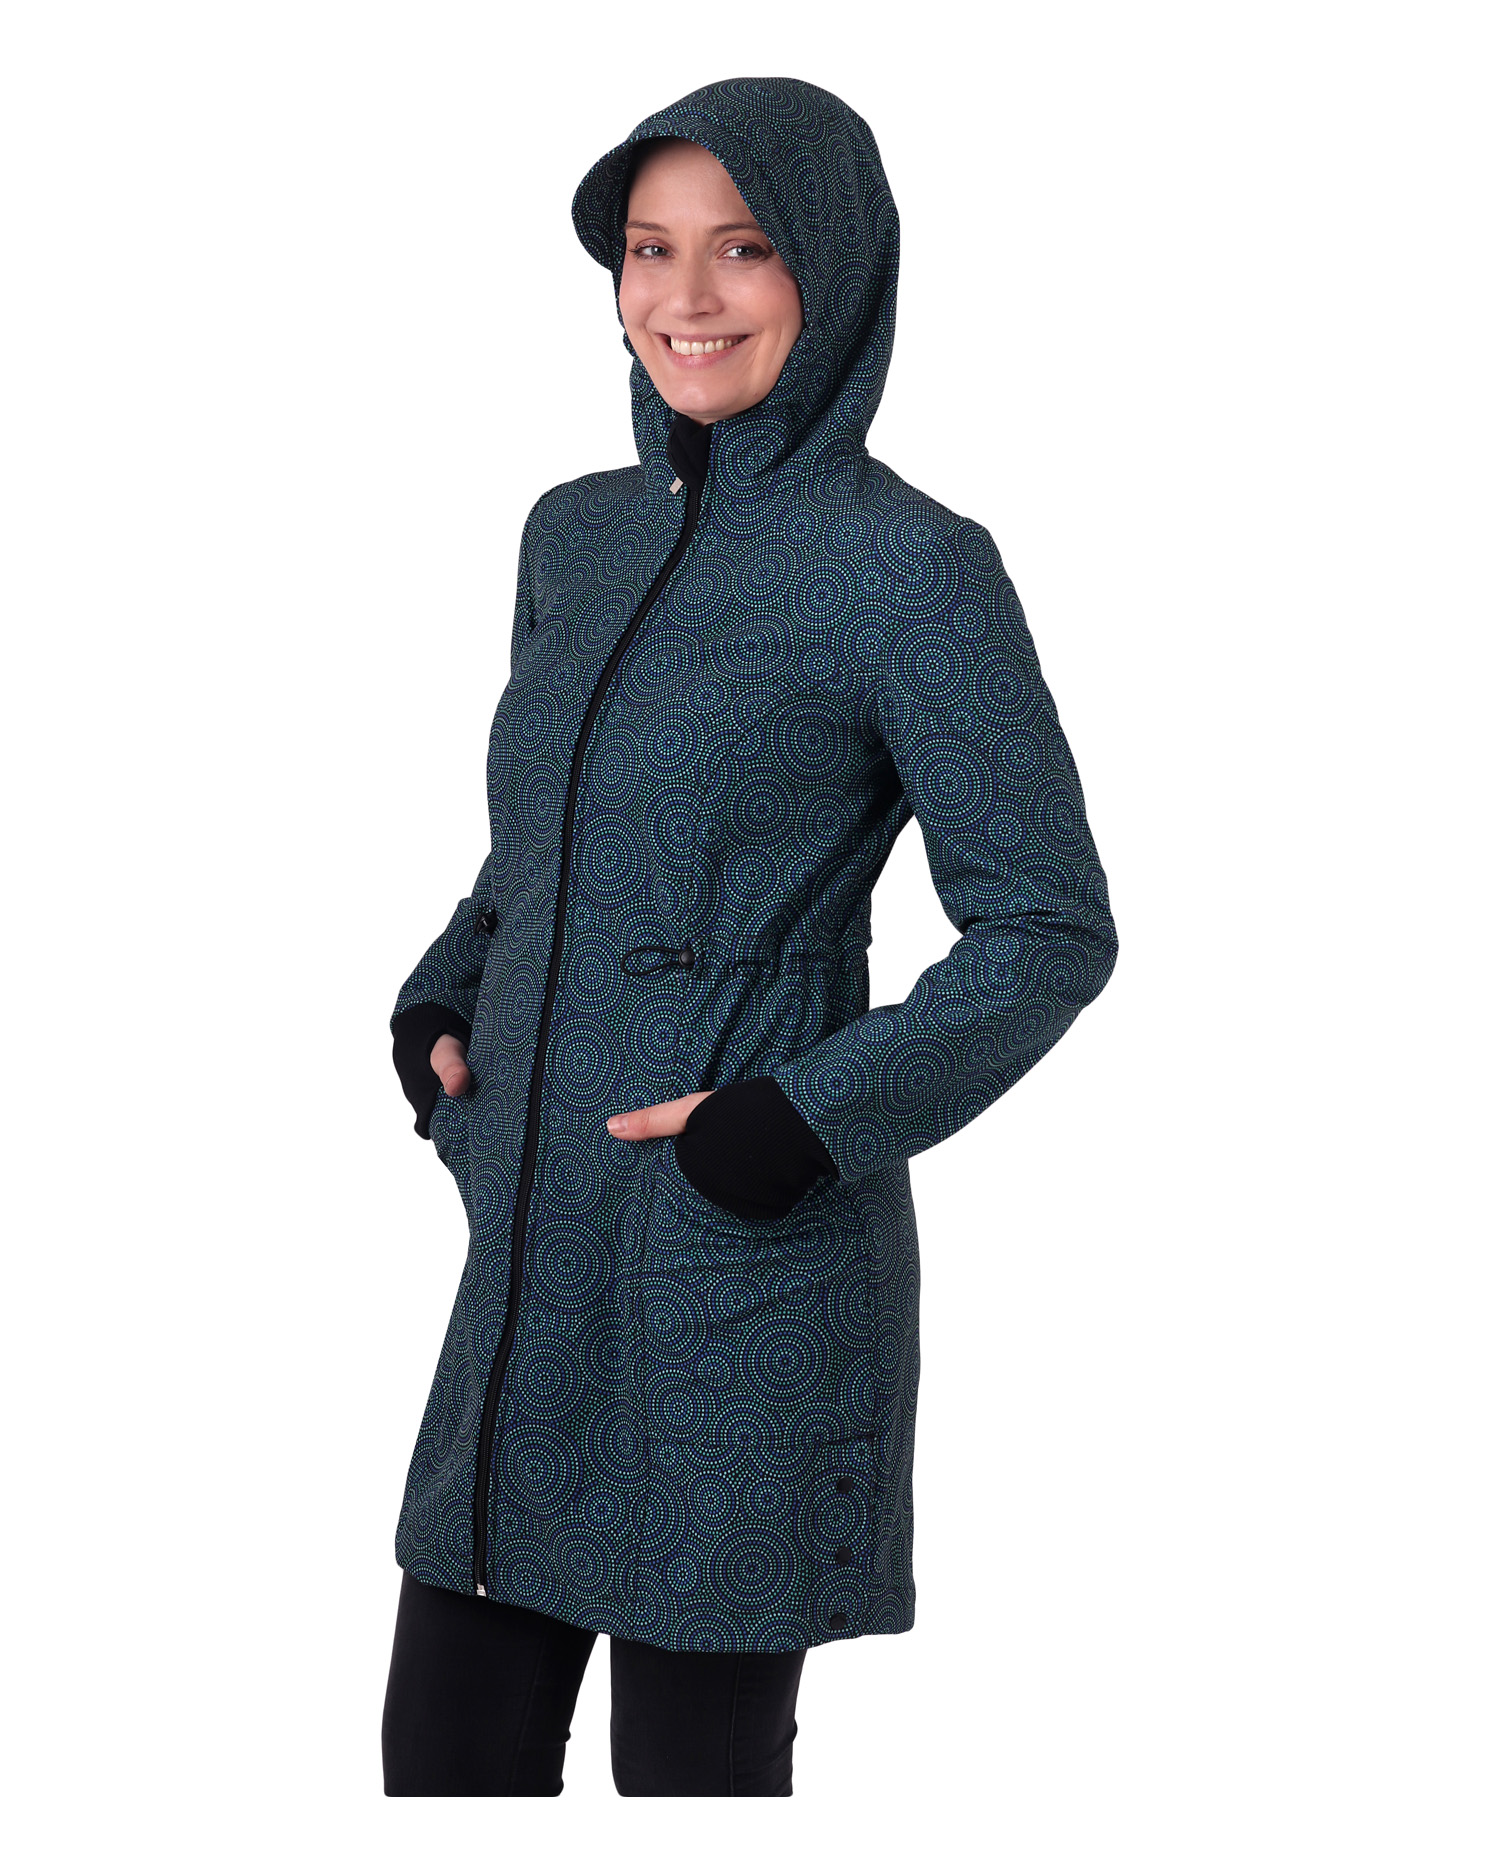 Women´s jackets and coats Hana, mandala